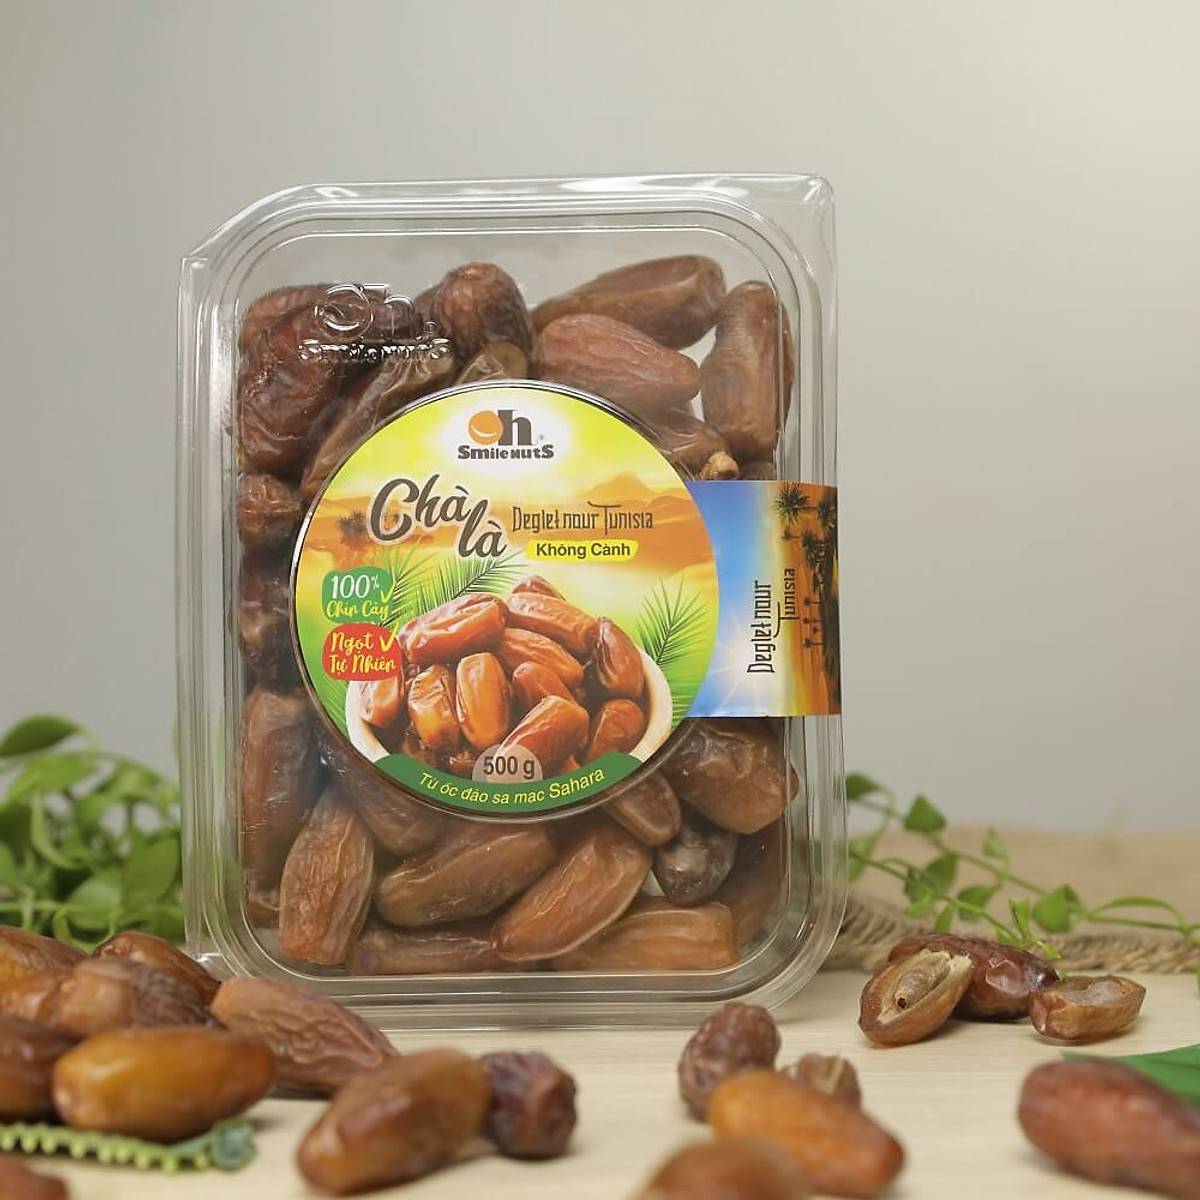 Chà Là Không Cành Tunisia Smile Nuts Hộp 500G - Dòng Chà Là Deglet Nour  Thịt Mềm, Dẻo, Thoảng Vị Mật Ong | Oh Smile Nuts Official Store | Tiki